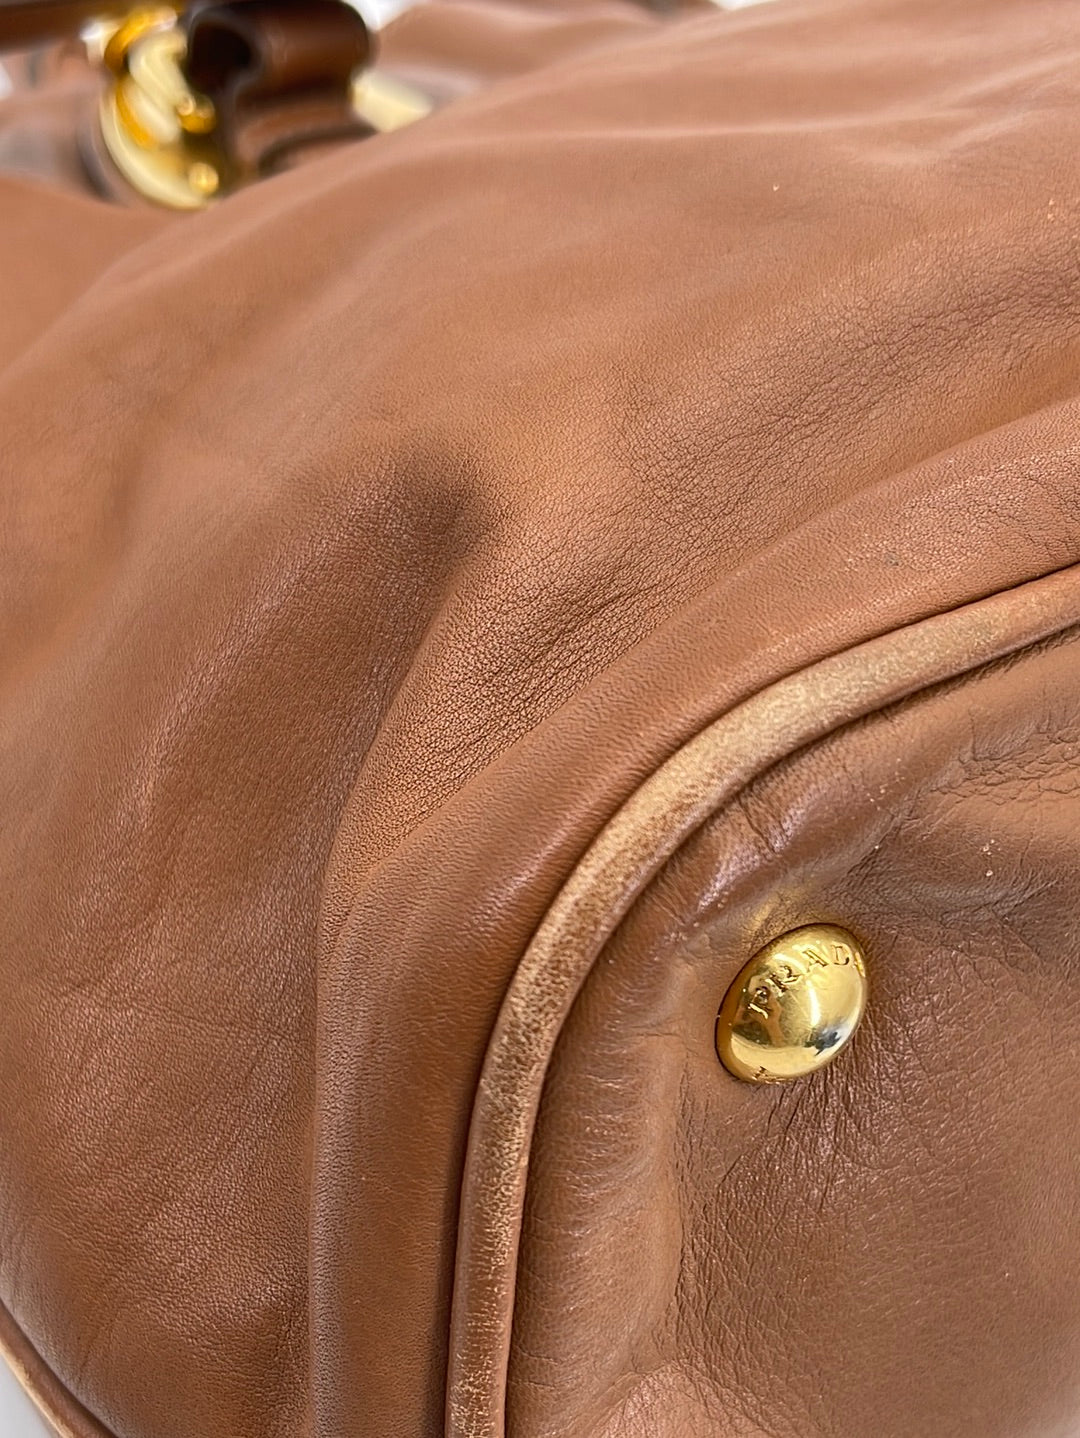 The perfect everyday tote 🌟 PRADA Tessuto Tote Bag SOLD #pradabag #prada